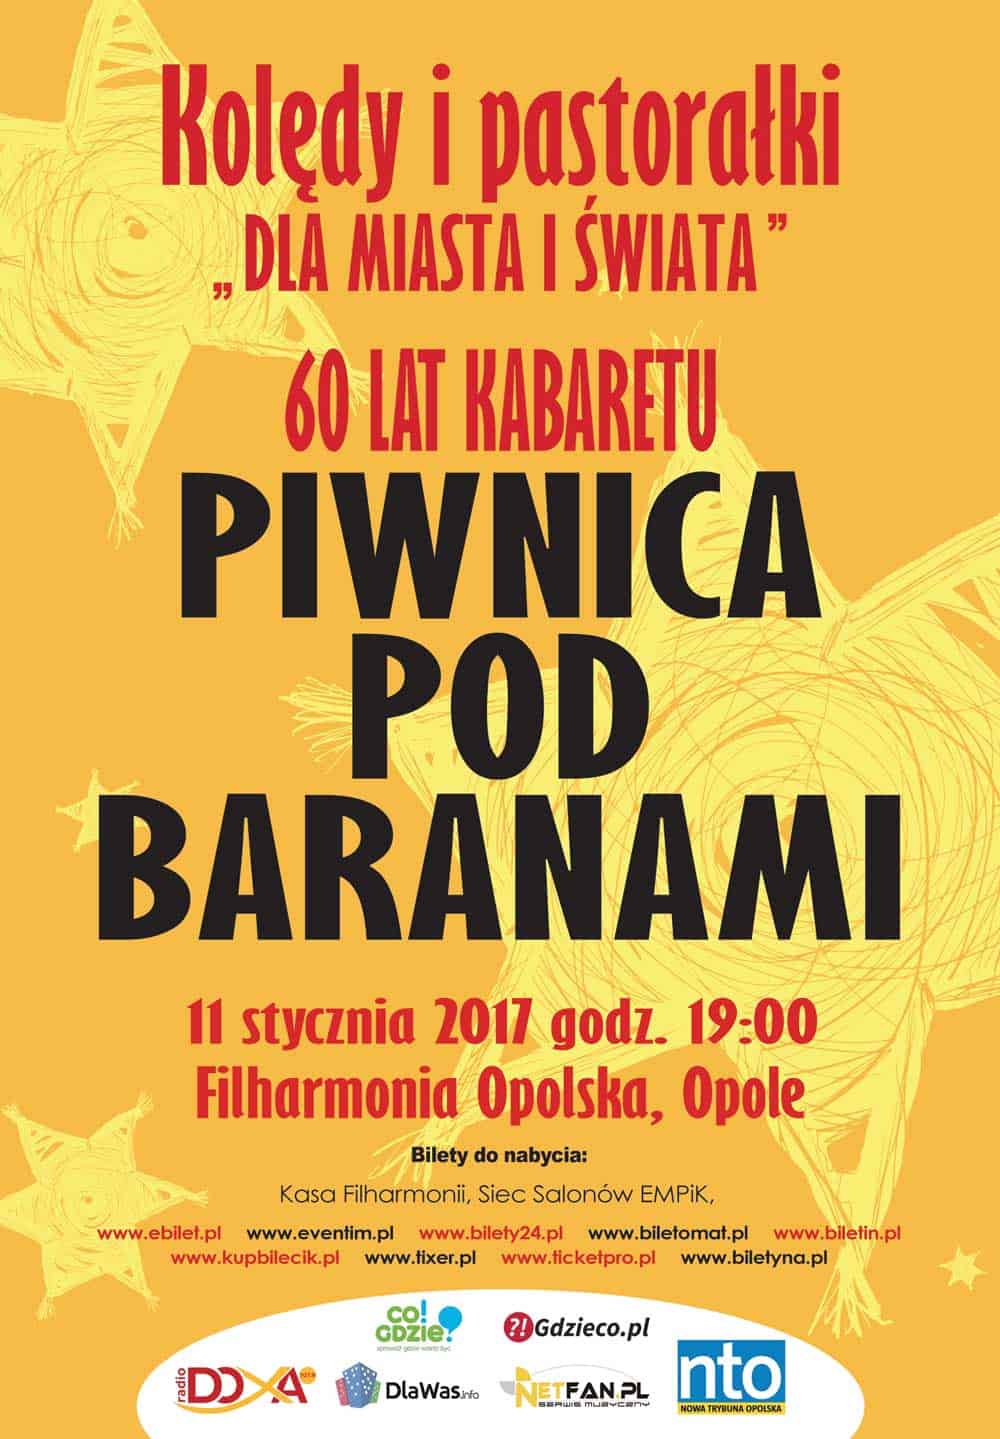 30 artystów Piwnicy pod Baranami zaśpiewa we Wrocławiu! 